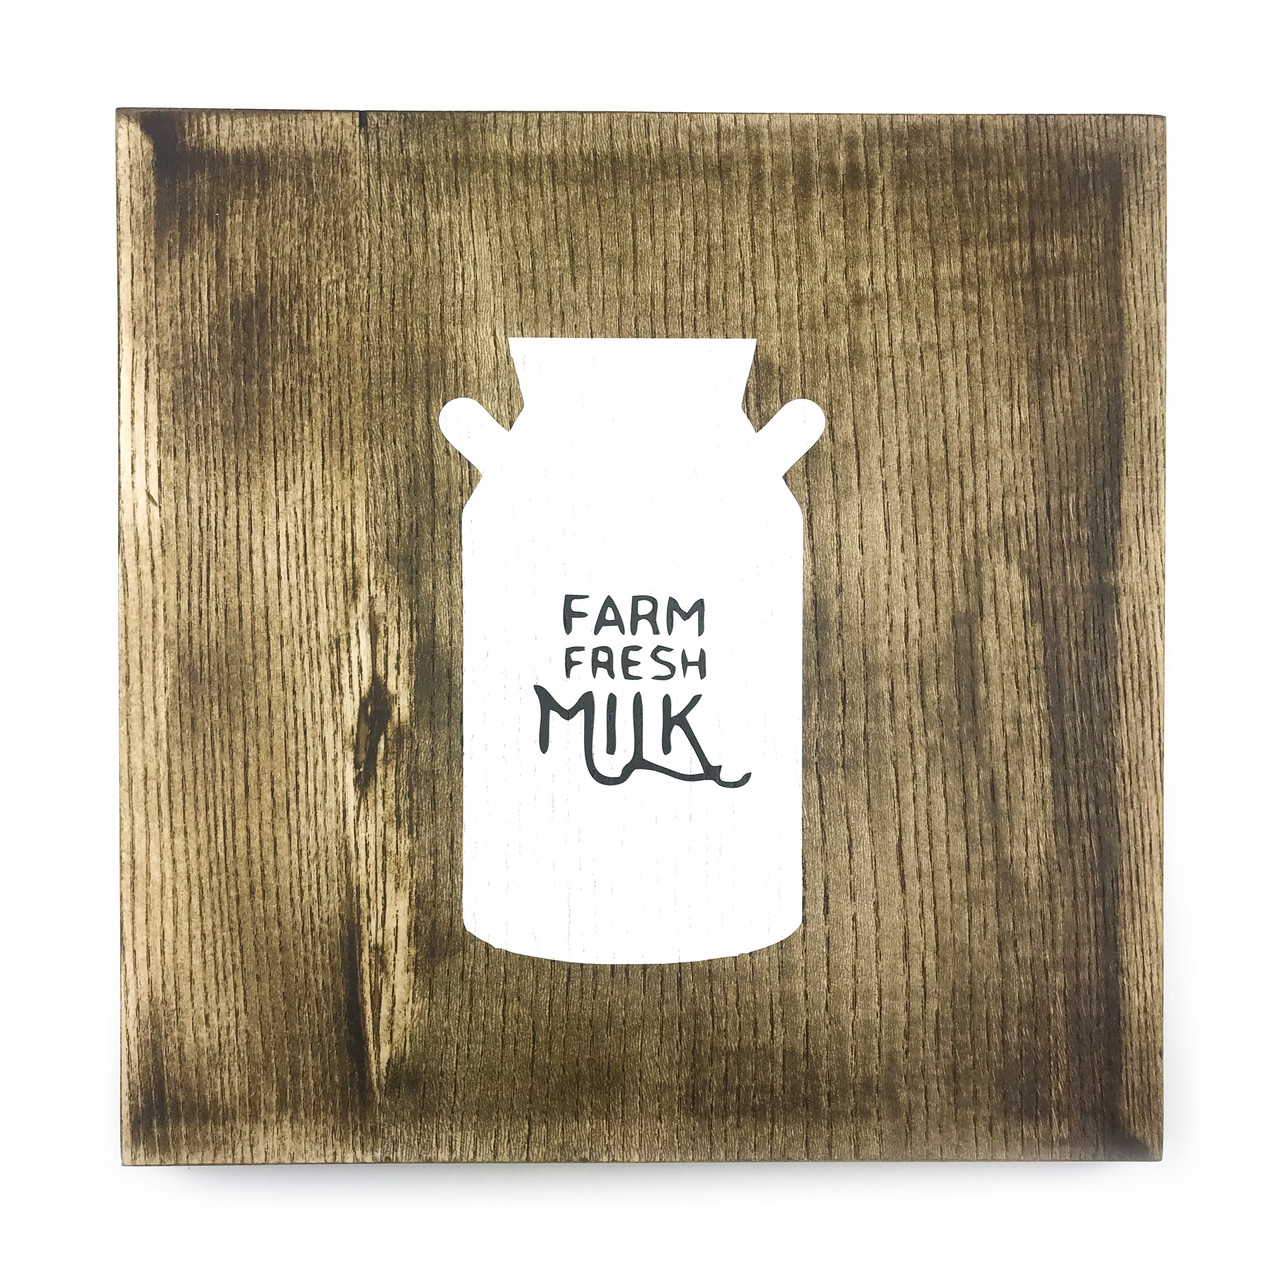 Дерев'яна картина "Farm fresh milk" 25 25 см